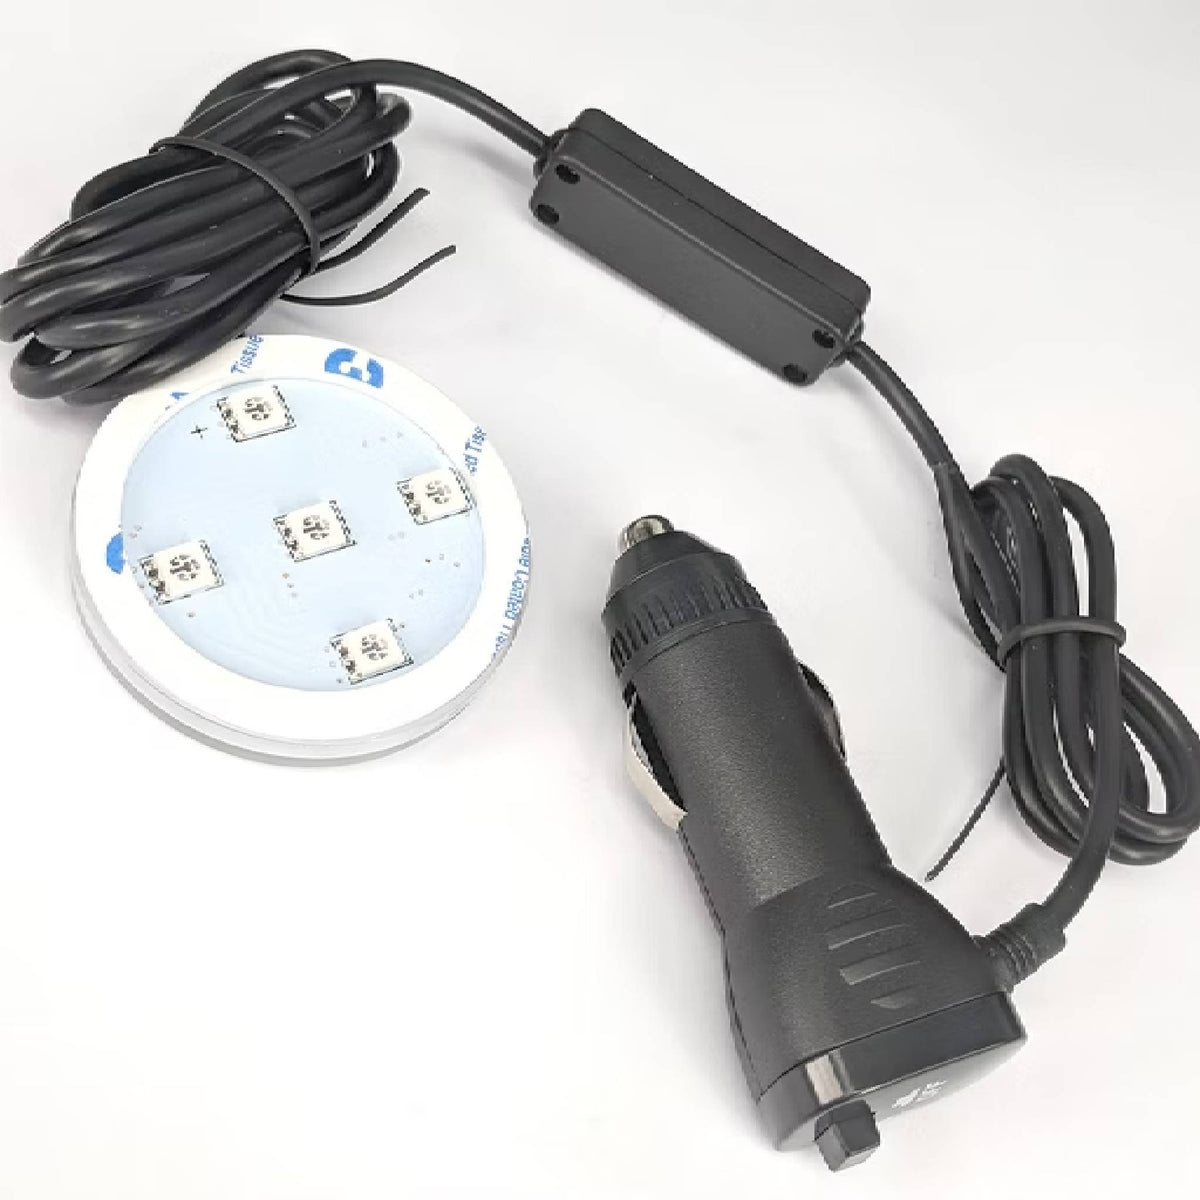 POPPY USB LED LIGHT 12-24V - AM PERFORMANCE